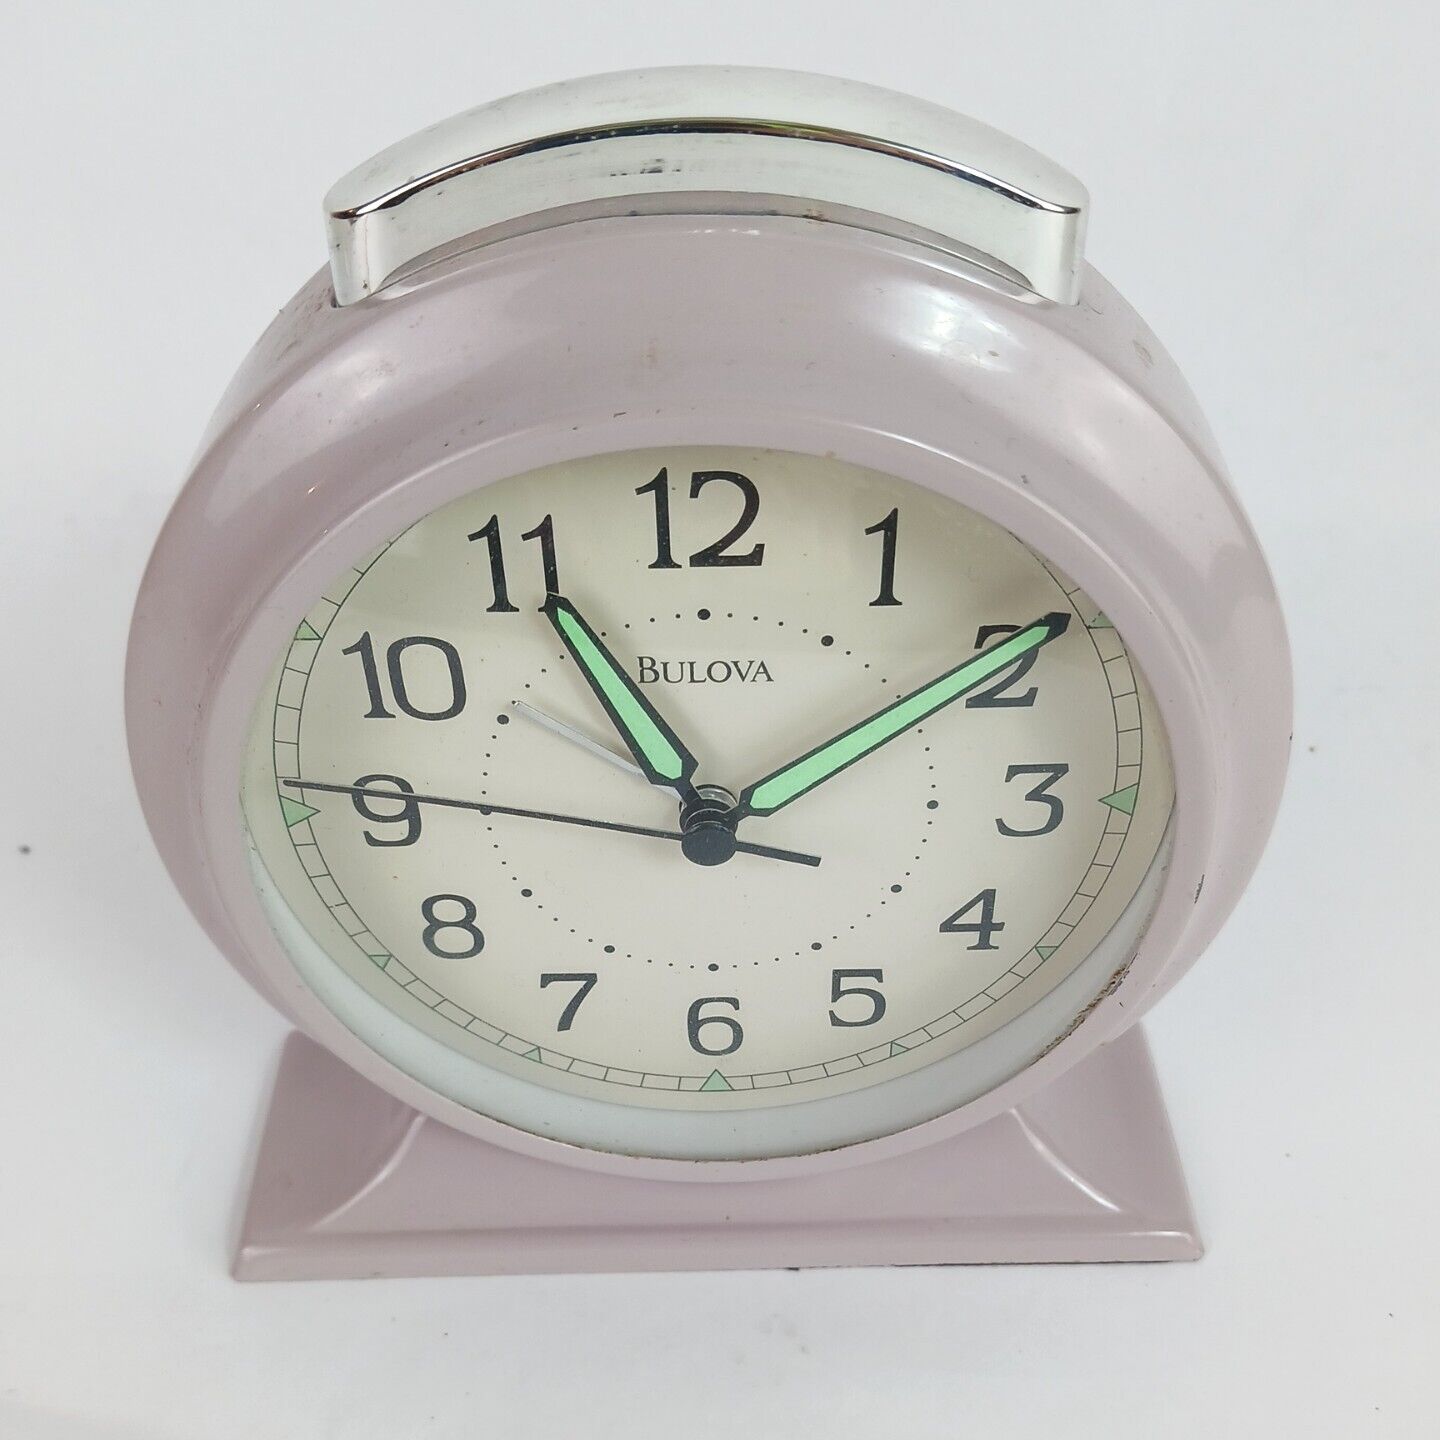 bulova alarm clock vintage. Clock works / Alarm is unreliable. Uses 1 C battery